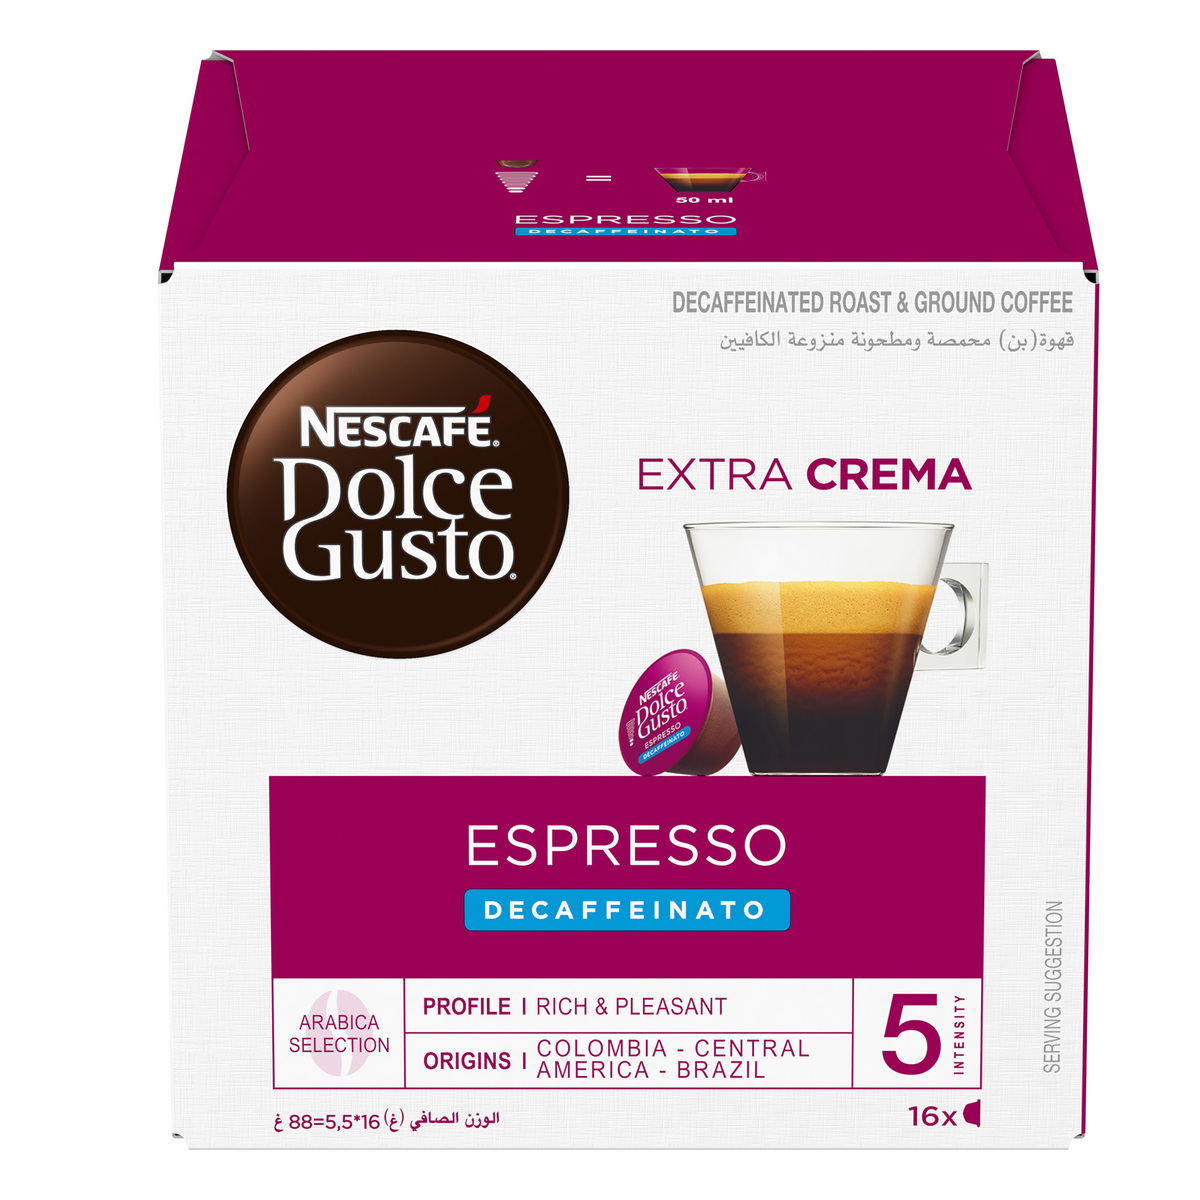 Nescafe Dolce Gusto Extra Crema Espresso Decaffeinato Coffee Capsules 16 pcs 88 g